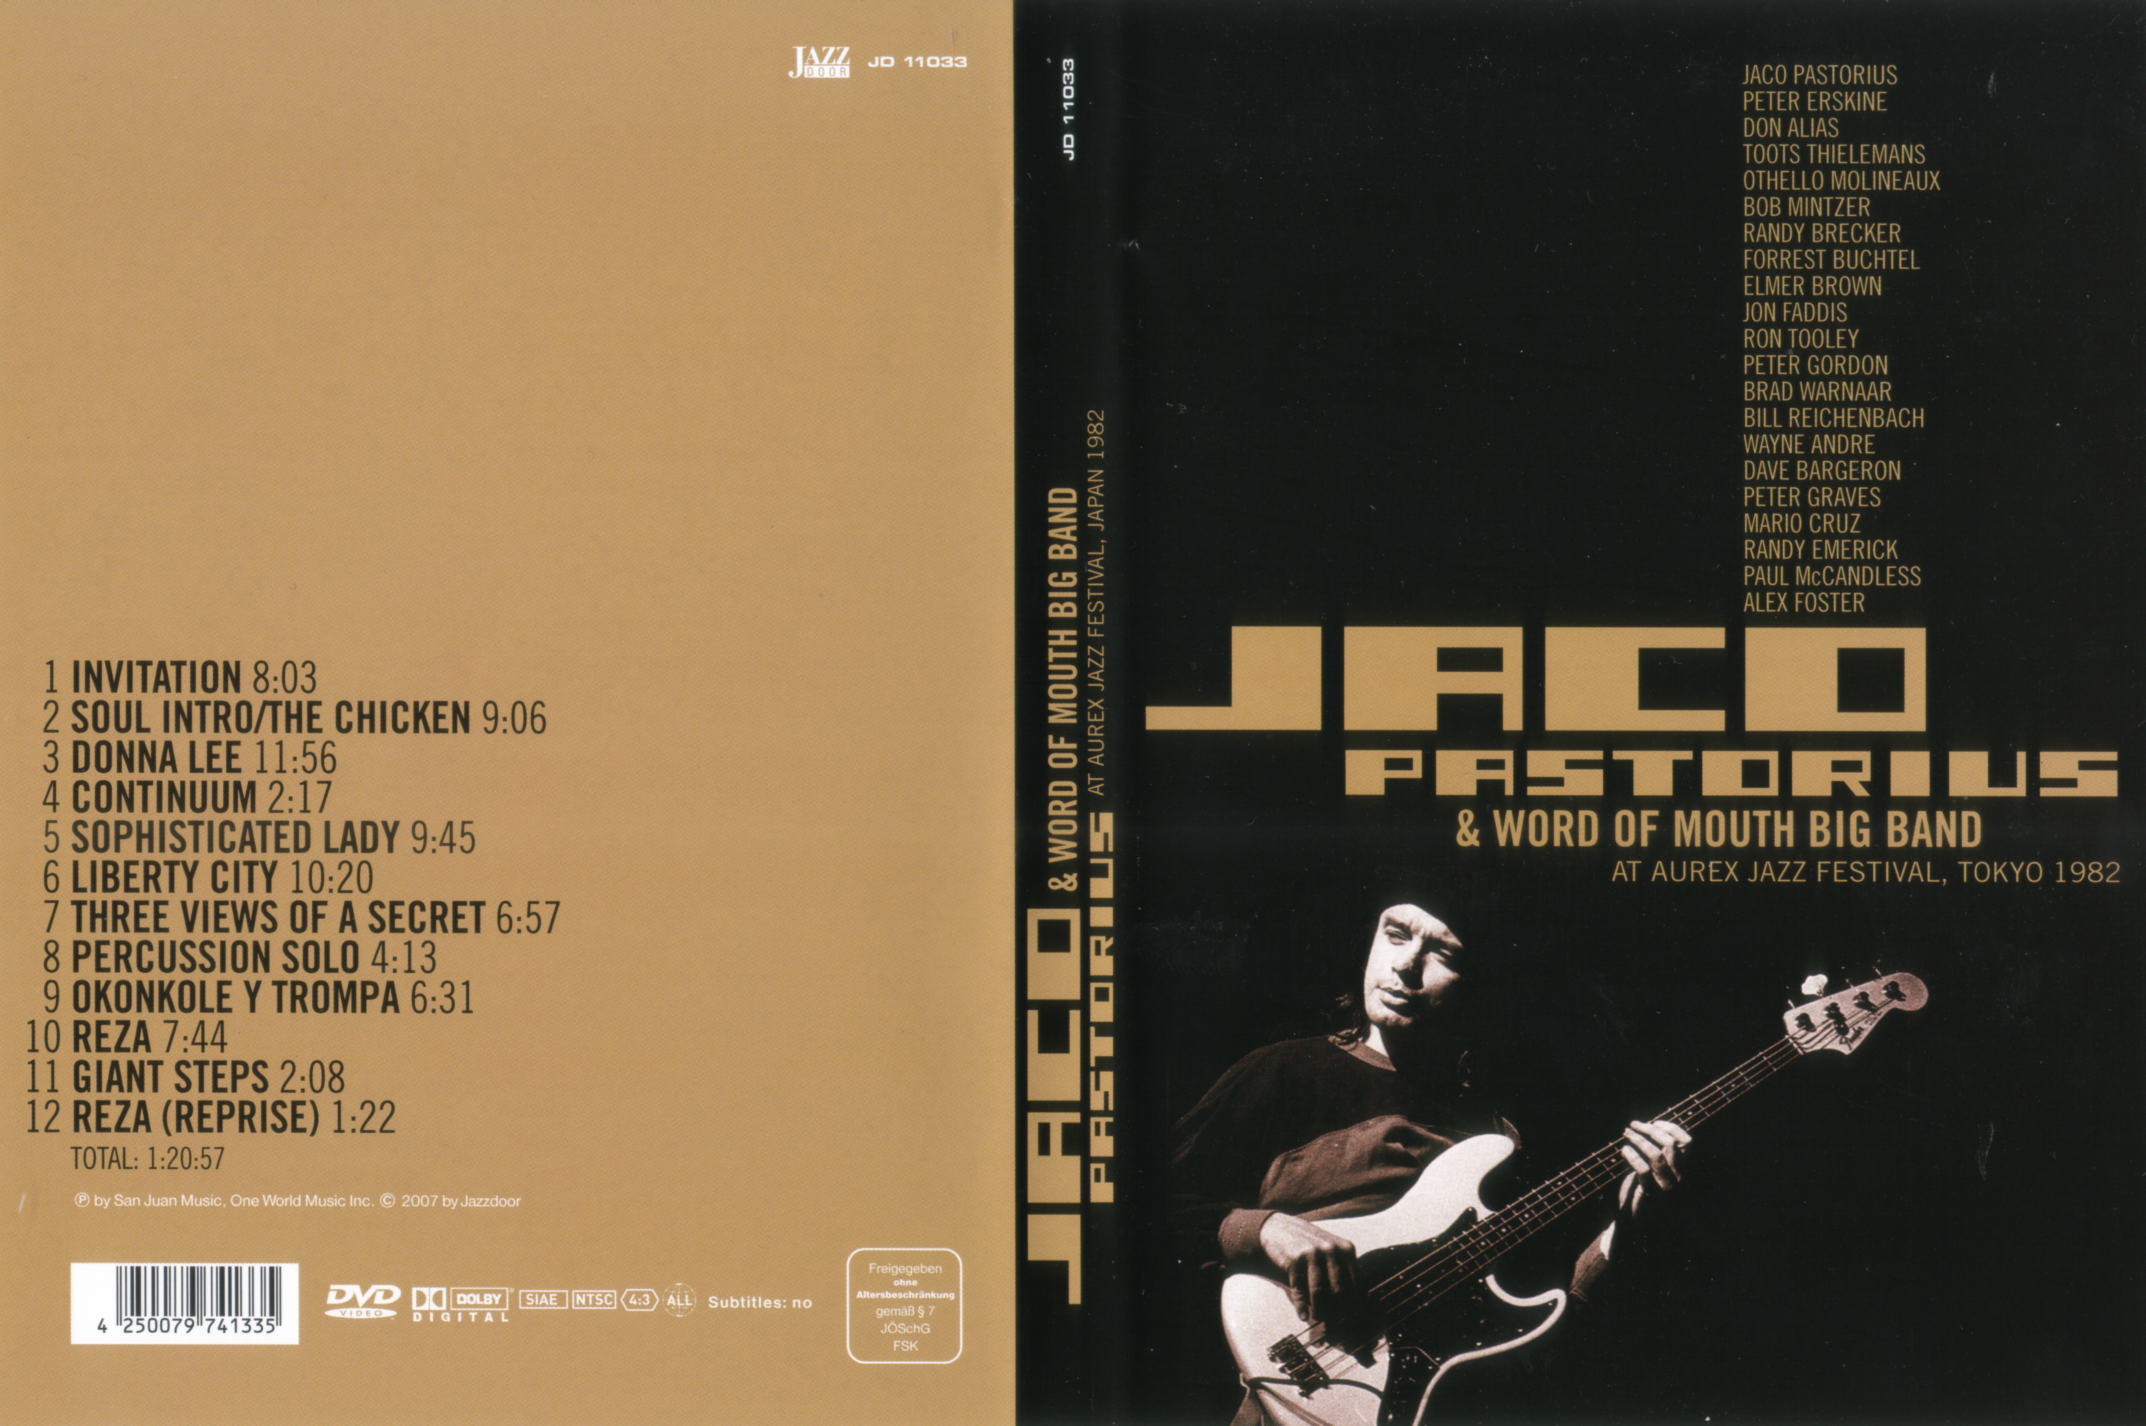 Jaquette DVD Jaco Pastorius At Aurex jazz festival Tokyo 1982